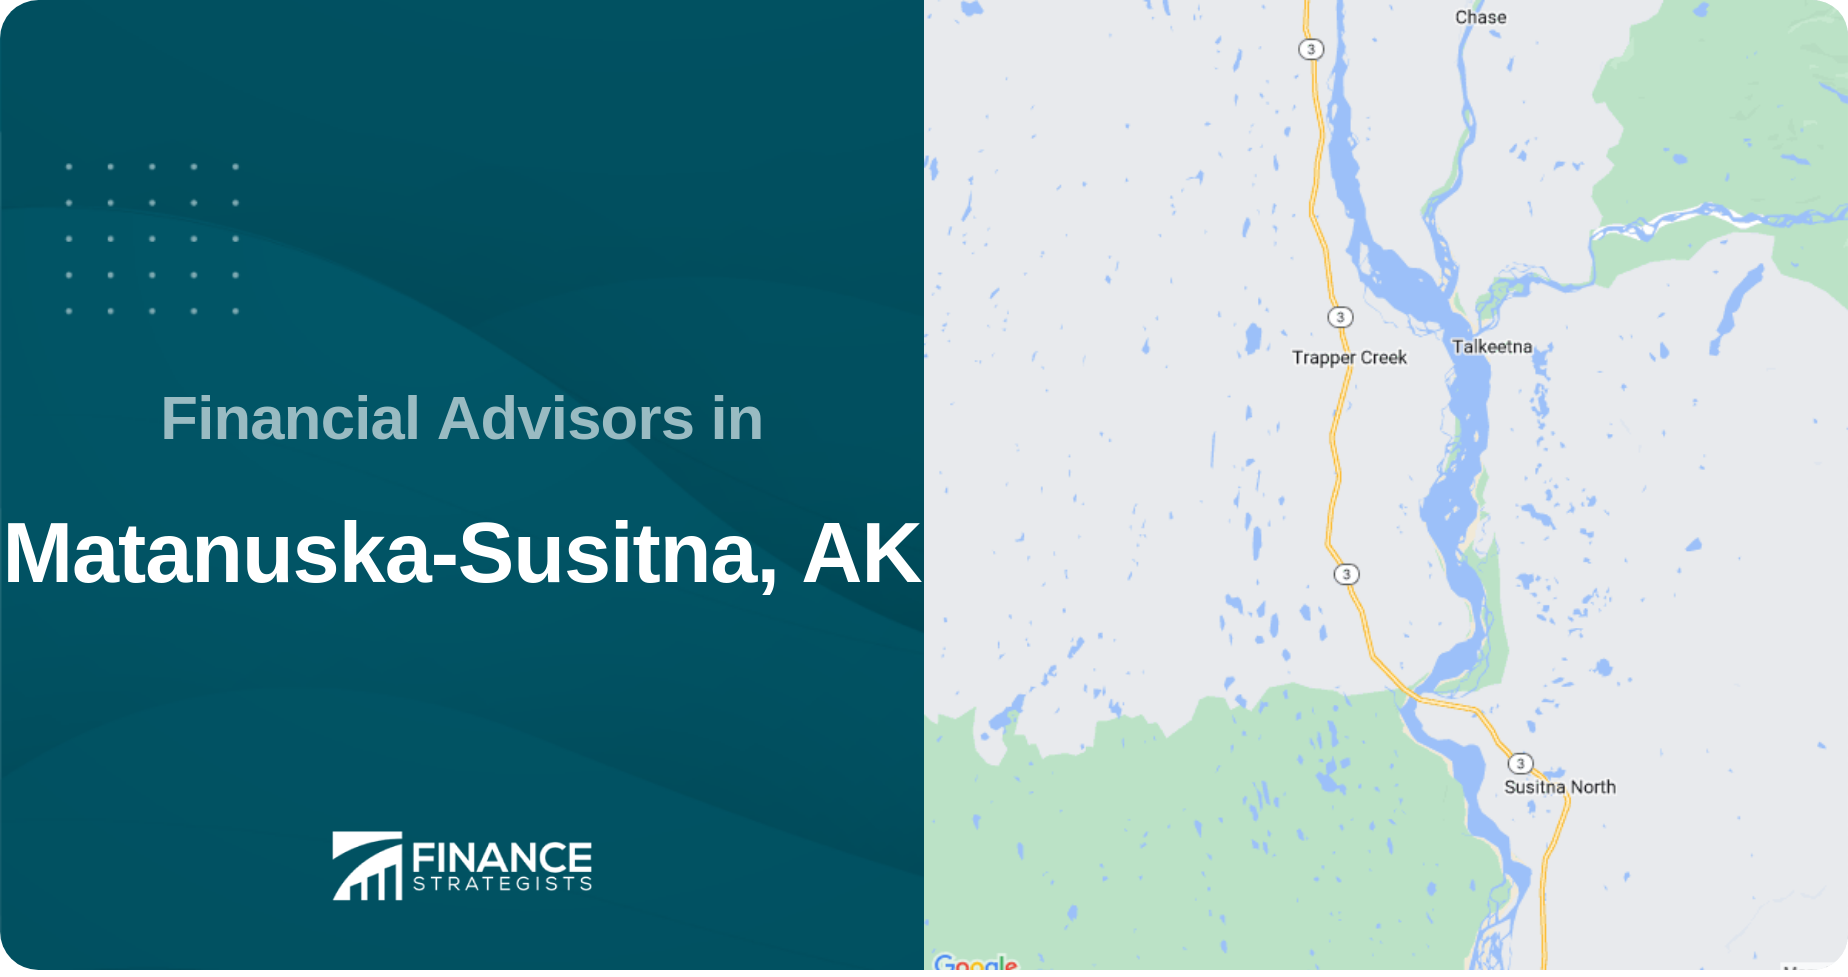 Financial Advisors in Matanuska-Susitna, AK